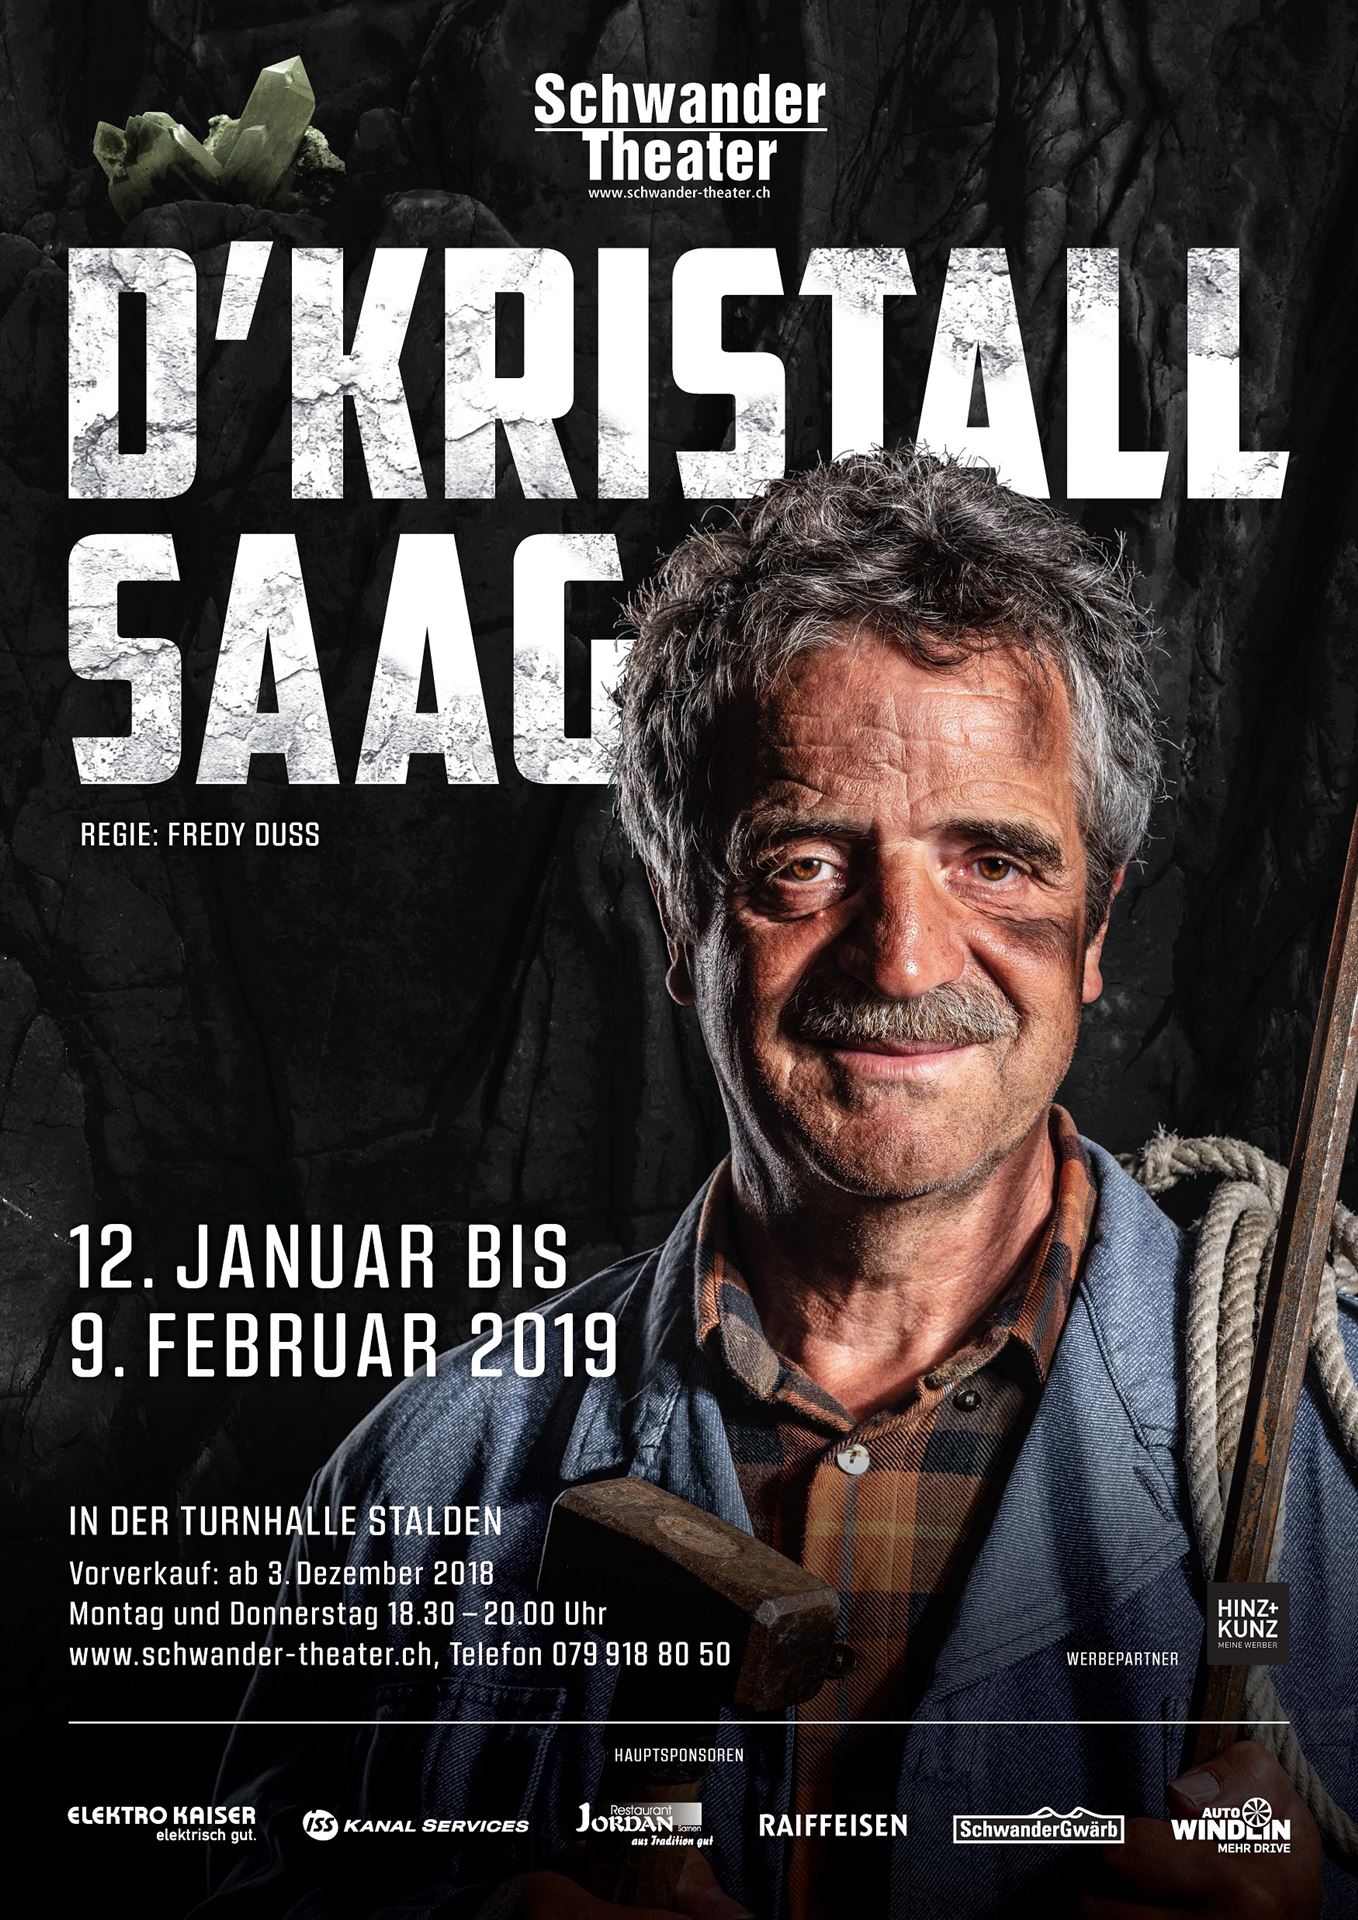 Schwander Theater von 12. Januar bis 9. Februar 2019